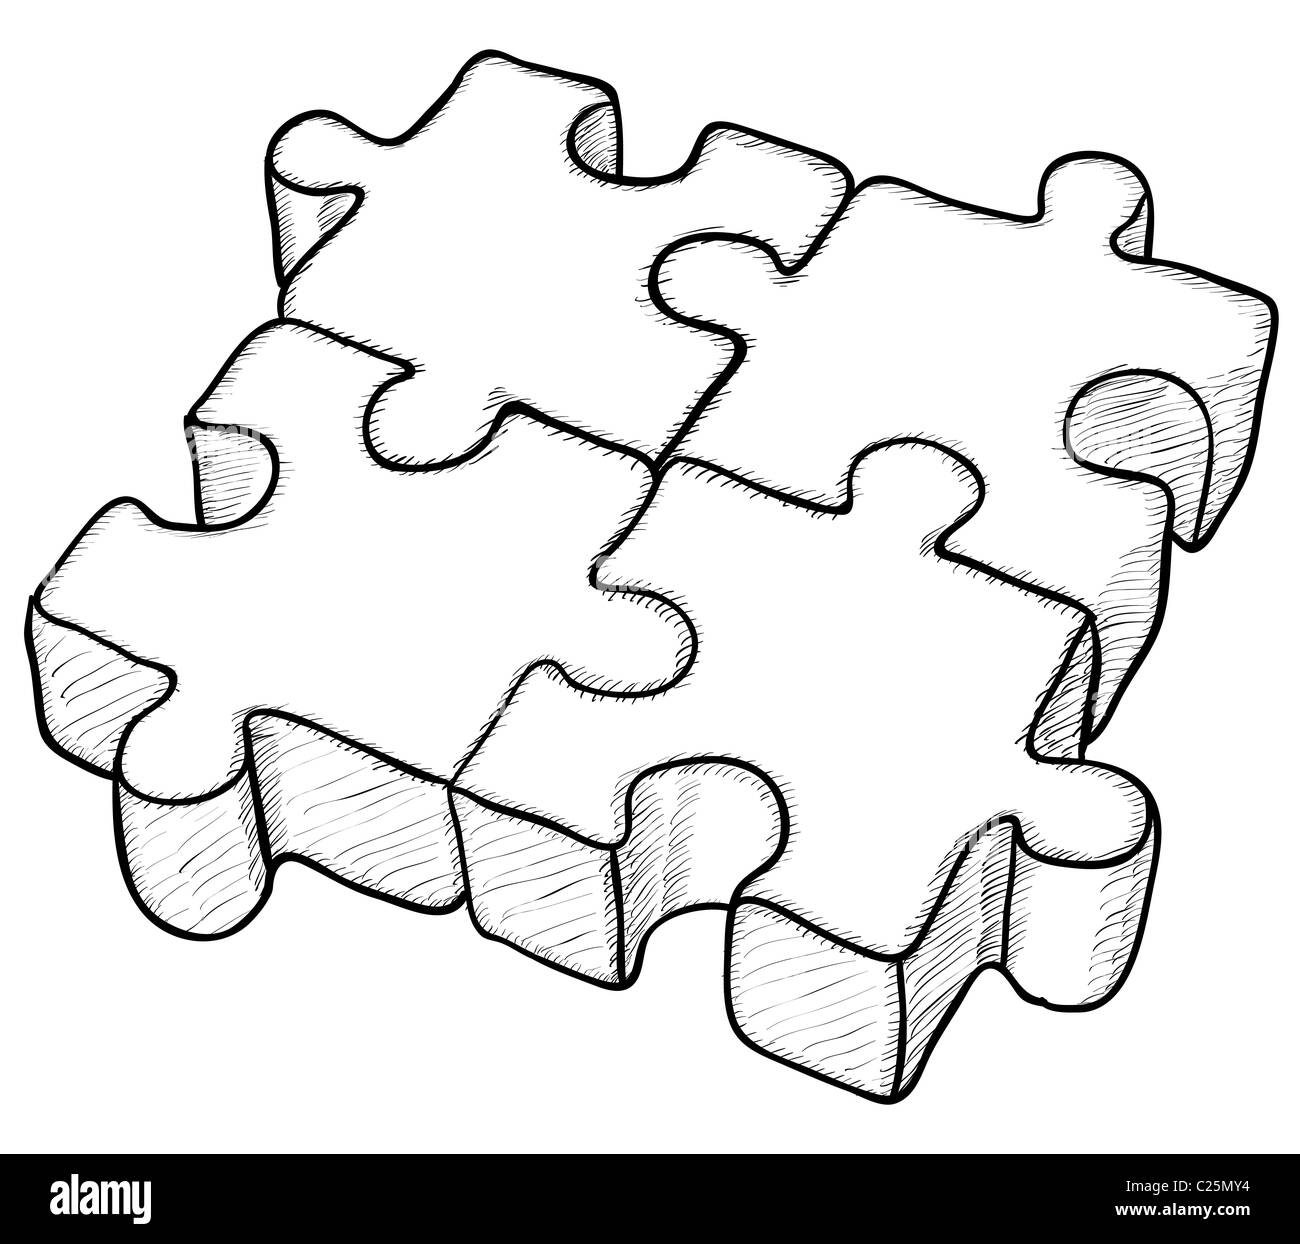 Förmigen monochrome Zeichnung - Puzzle-Elemente Stockfoto